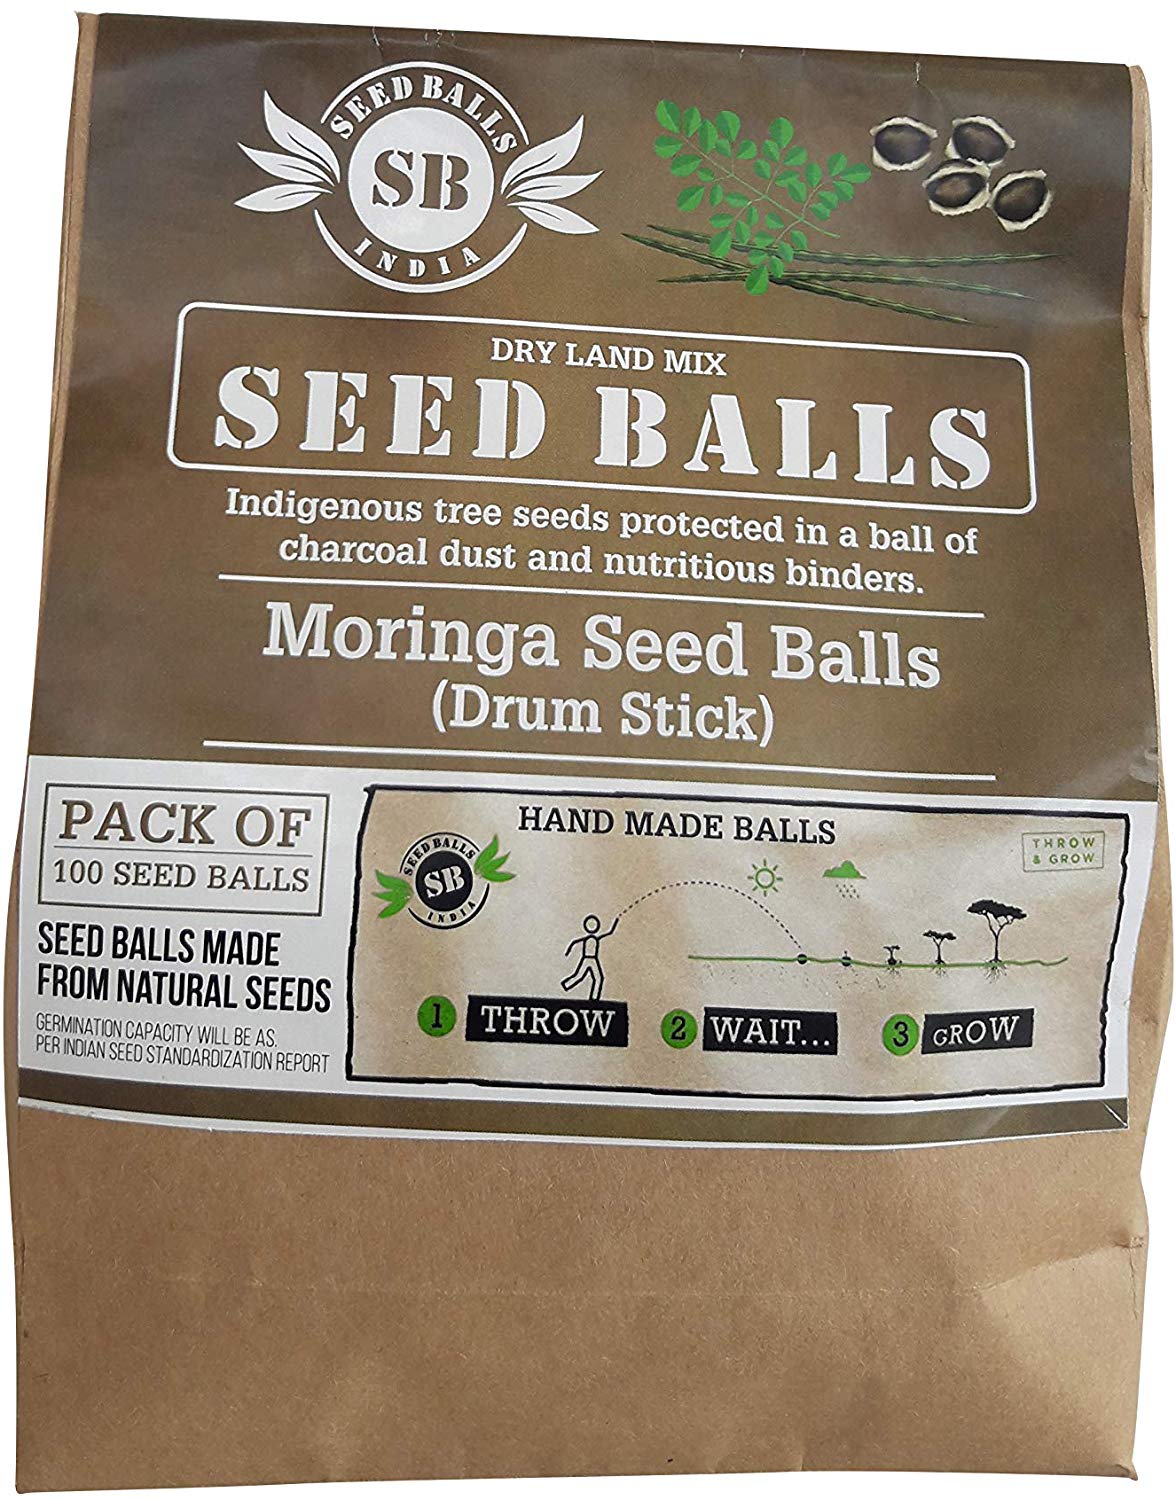 Moringa/Drum stick Seed Balls